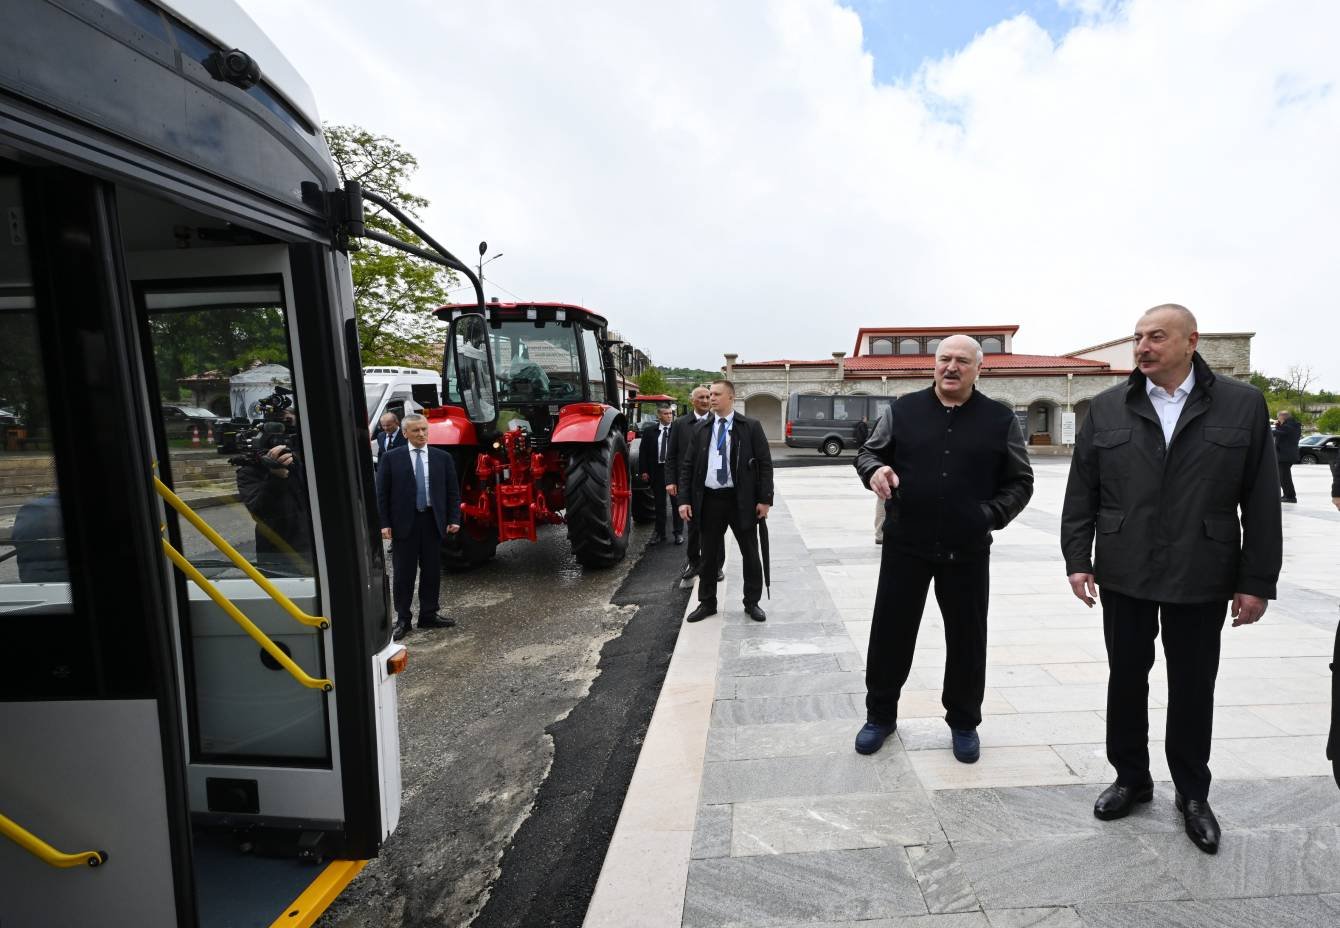 Azərbaycan ilə Belarusun birgə istehsalı olan avtobusa və Belarus Prezidentinin hədiyyə etdiyi traktorlara baxış keçirilib